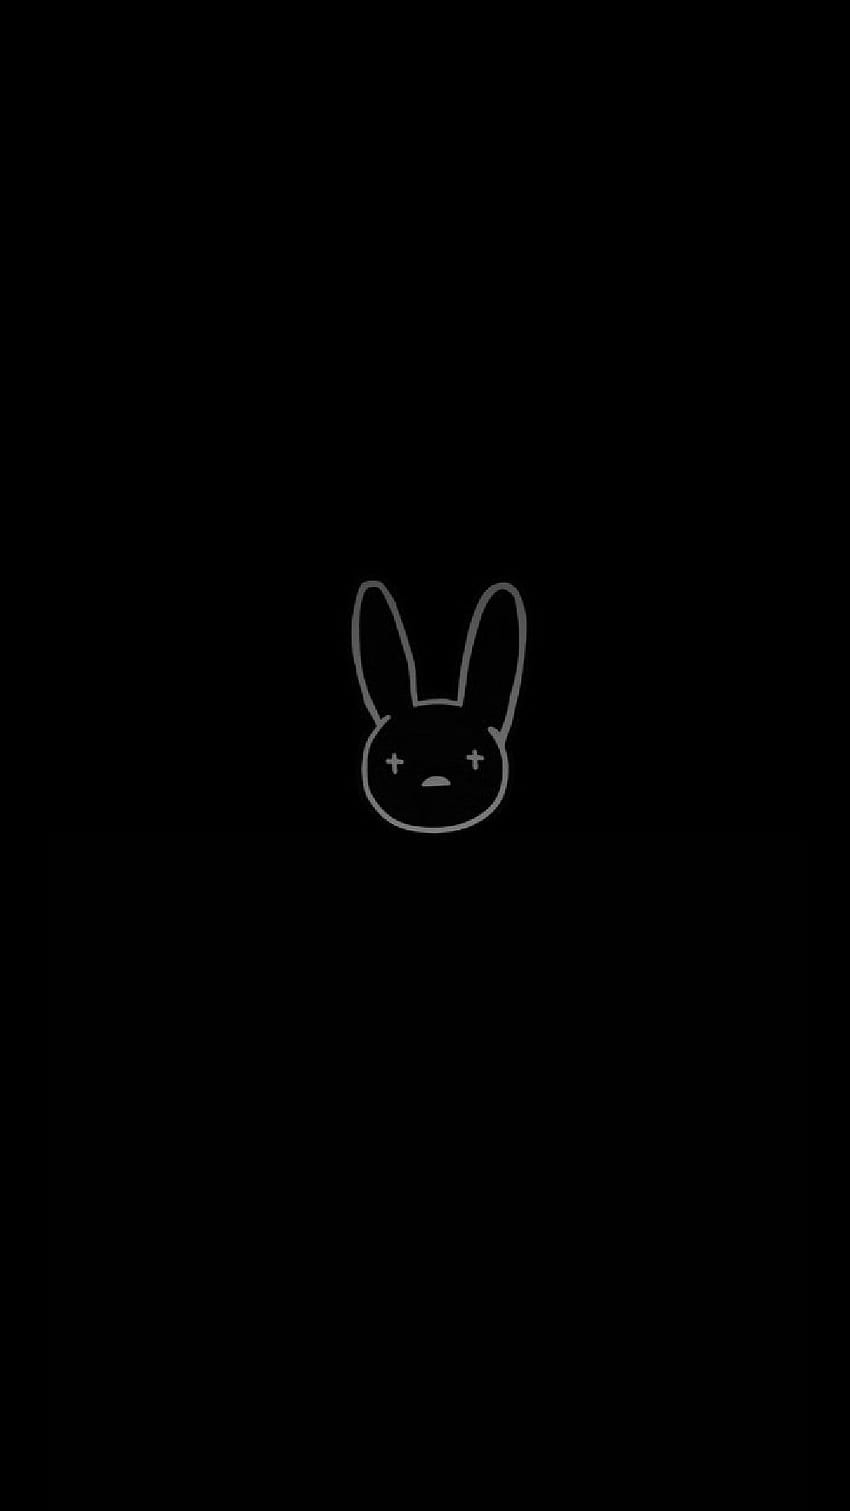 Pixilart - Bad Bunny s logo by Peridot-Aoi